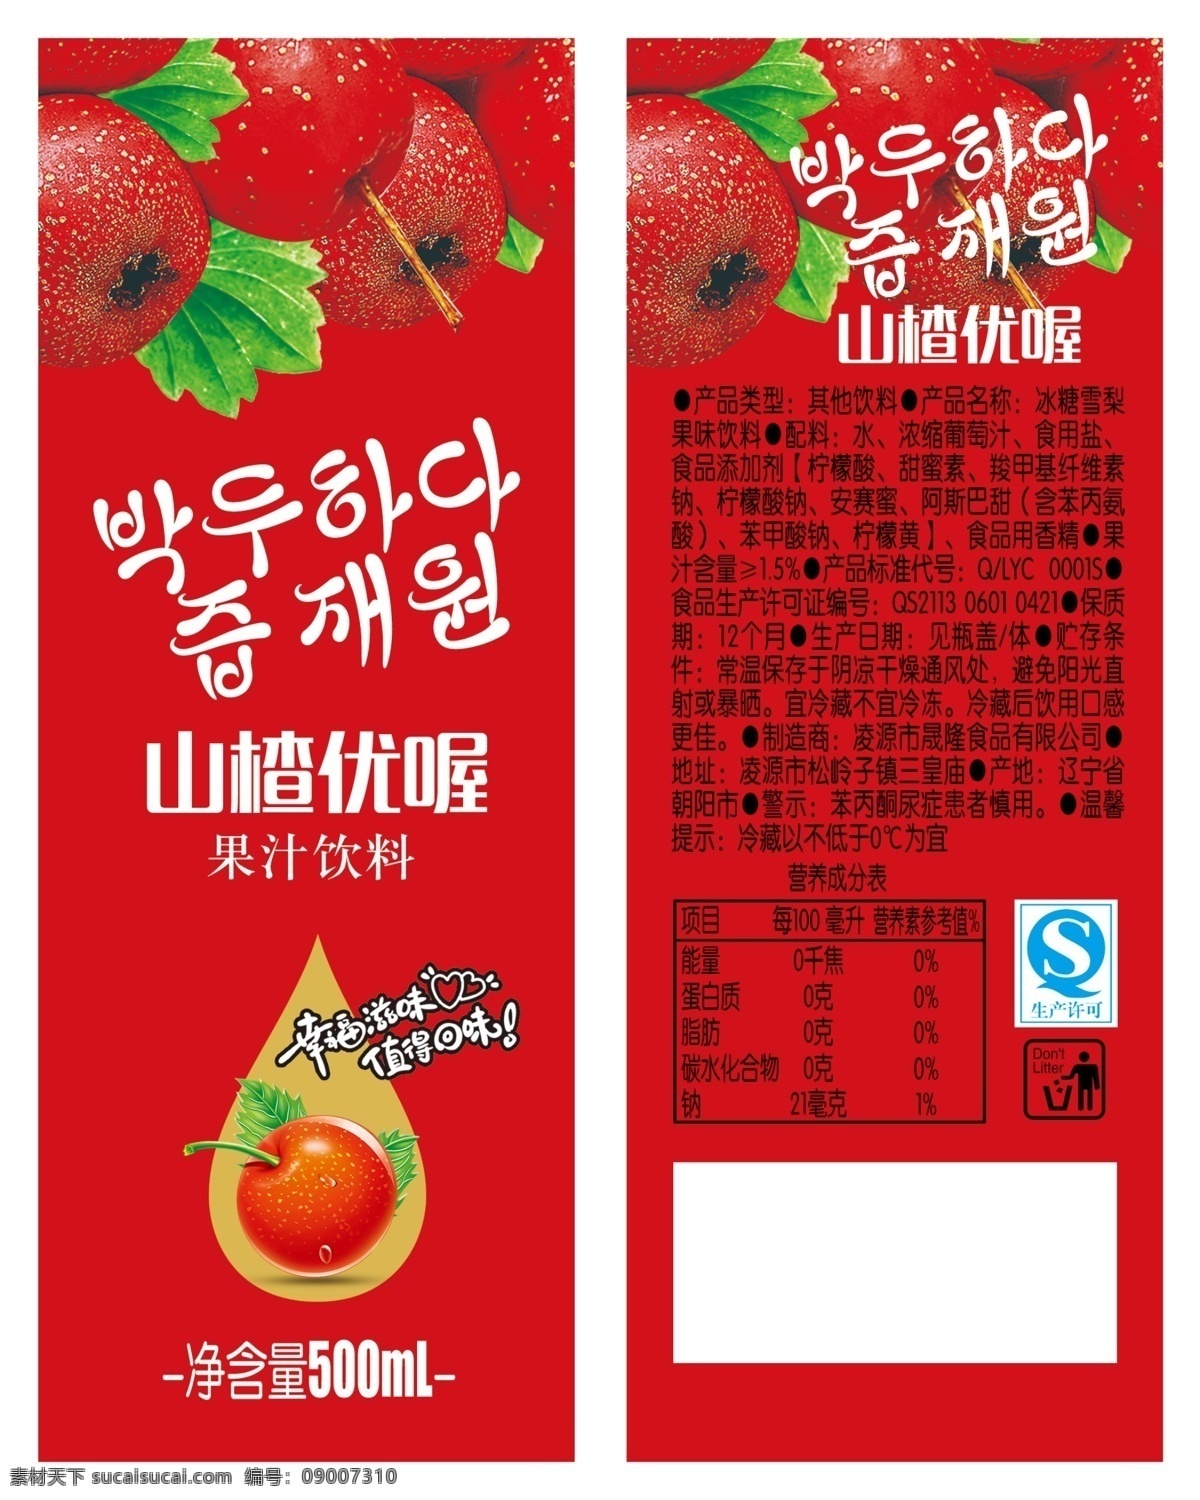 山楂汁 山楂 文字 广告语 韩语 qs 成分表 环境标